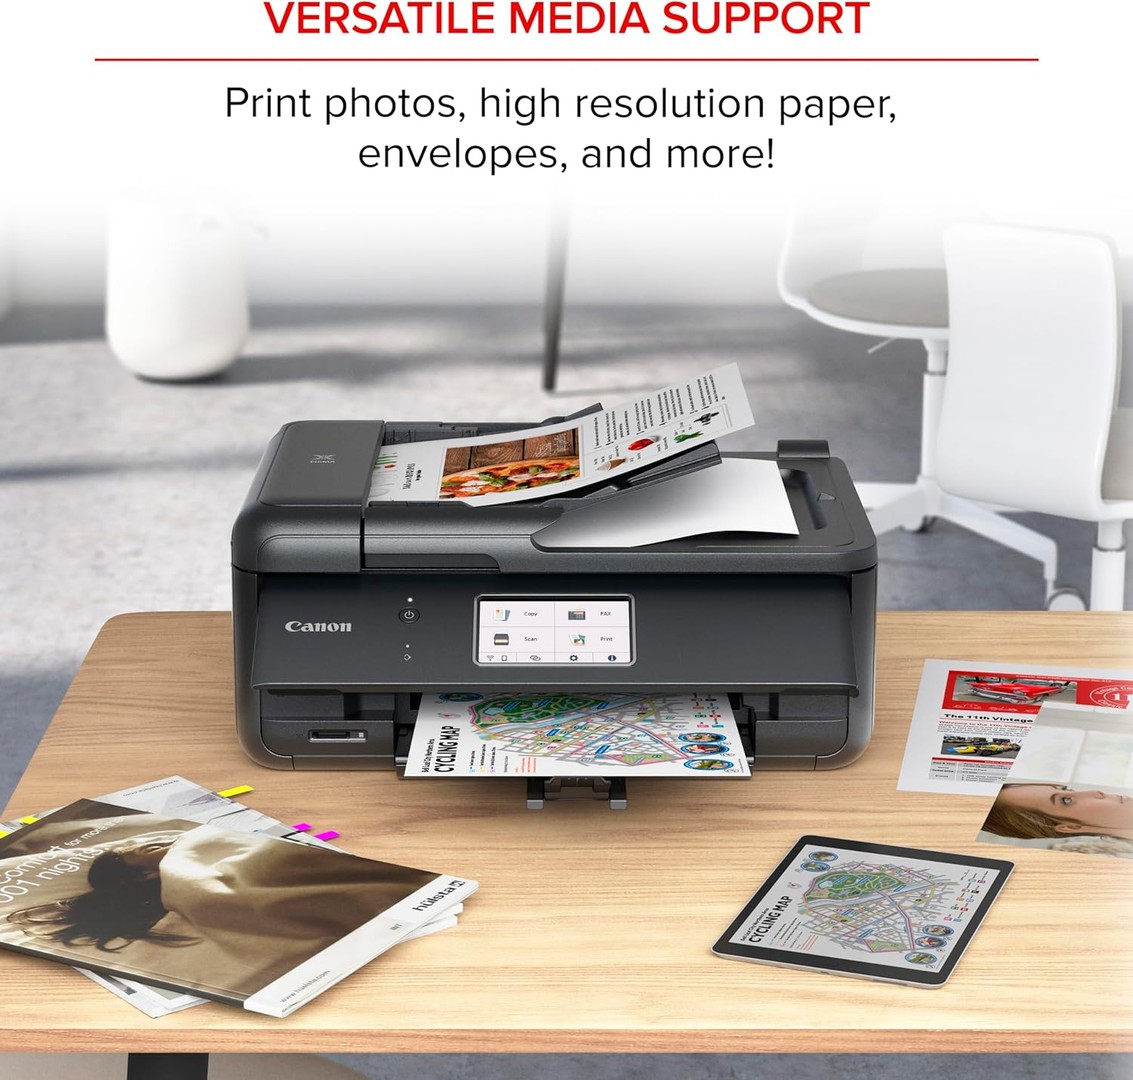 impresoras y scanners - Impresora Canon PIXMA TR8620a Multifuncional, fax, alimentador automático ADF